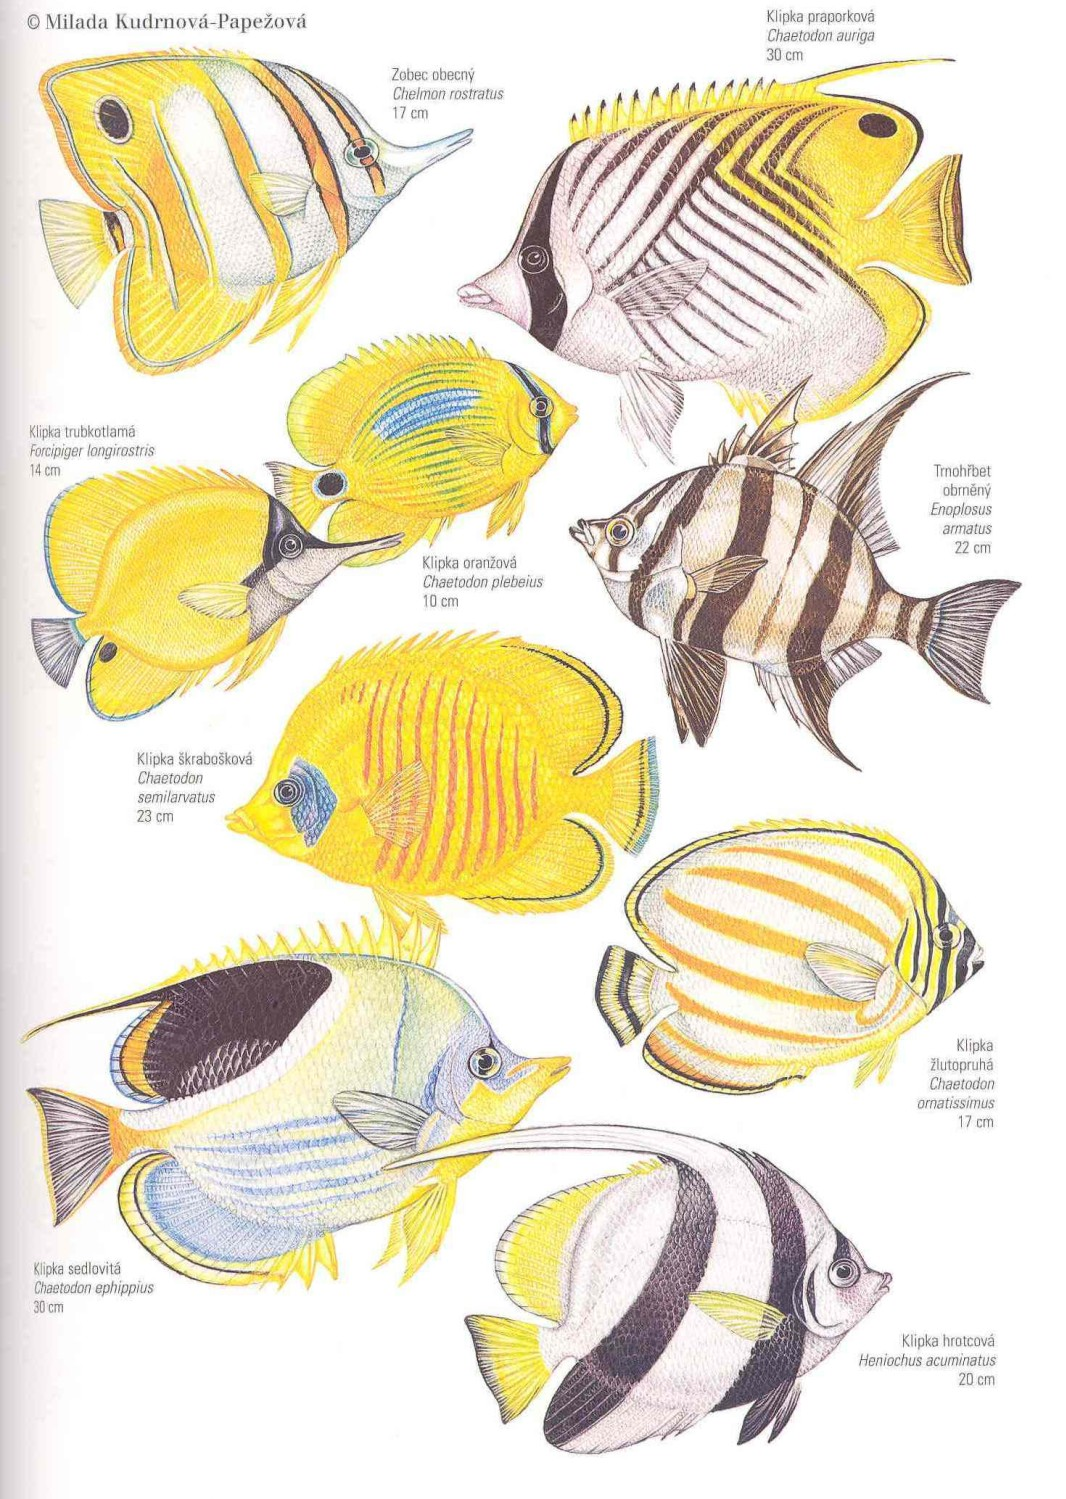 Řád: OSTNOPLOUTVÍ Perciformes viz výše KLIPKOVITÍ Chaetodontidae pestré sub- a tropické korálové ryby s jedinou hřbetní ploutví, zboku zploštělé vysoké tělo, oční skvrna.